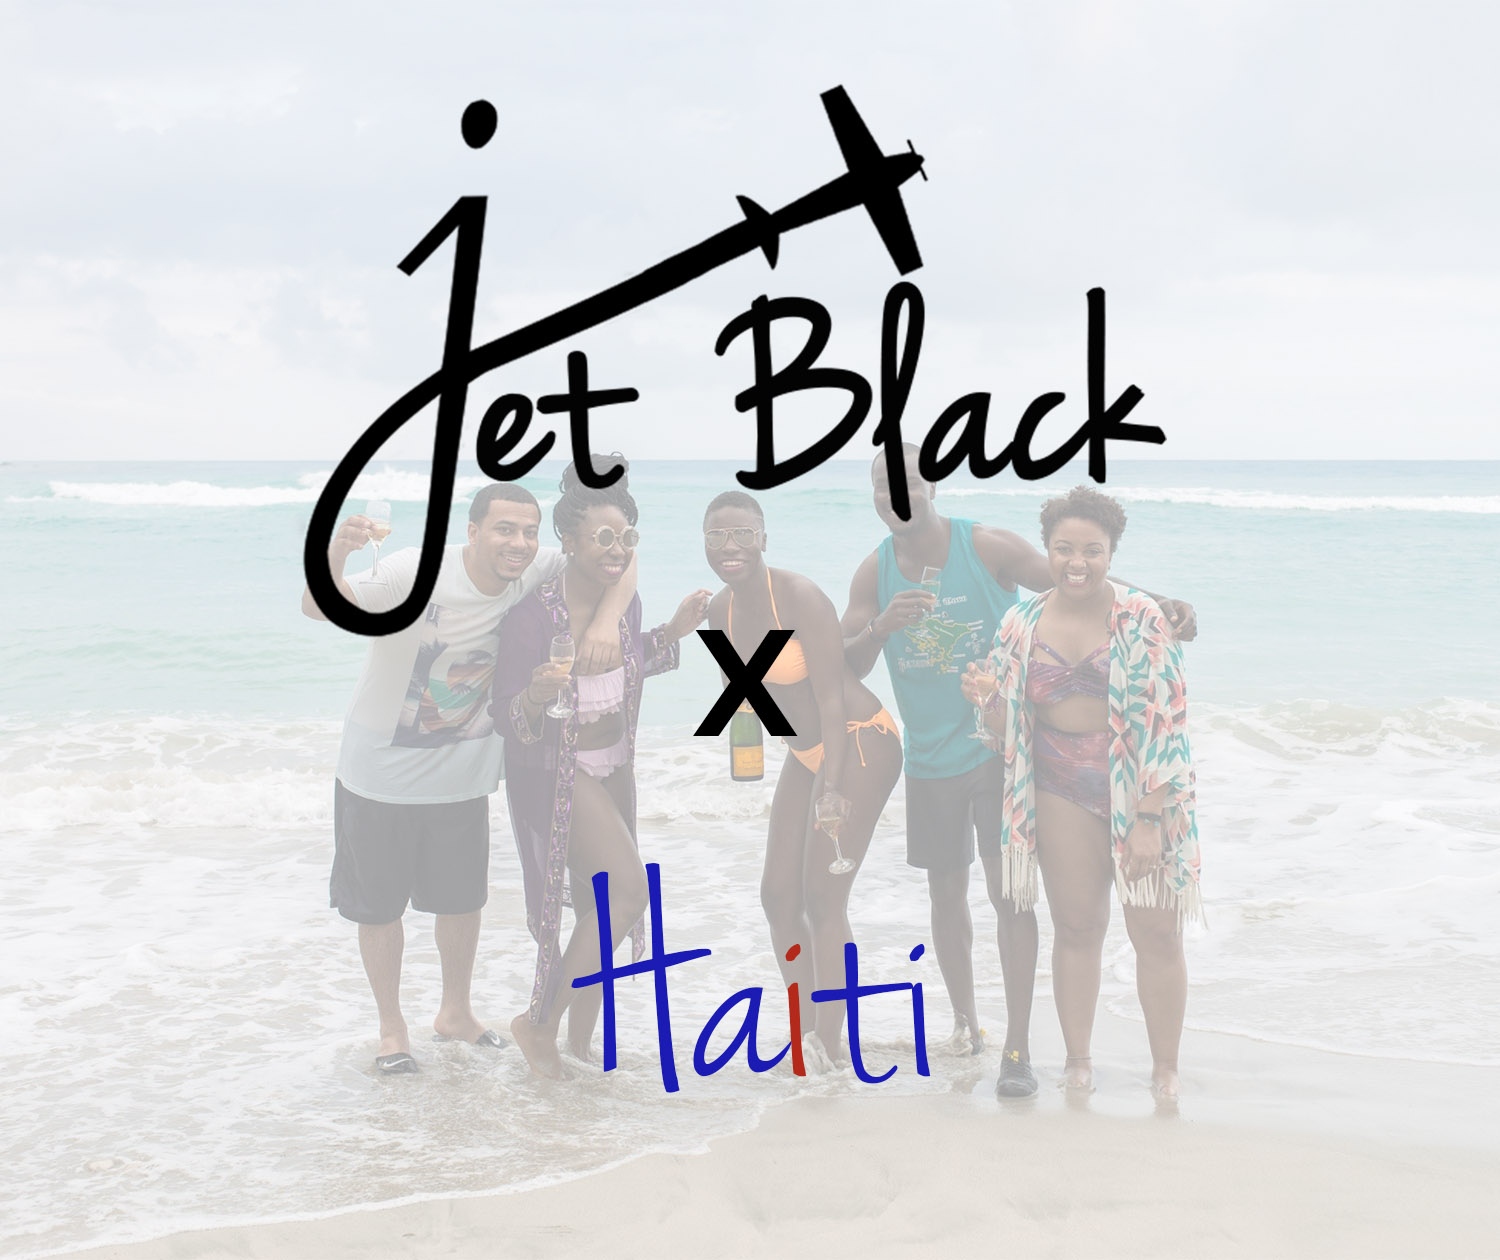 Jet Black X Haiti